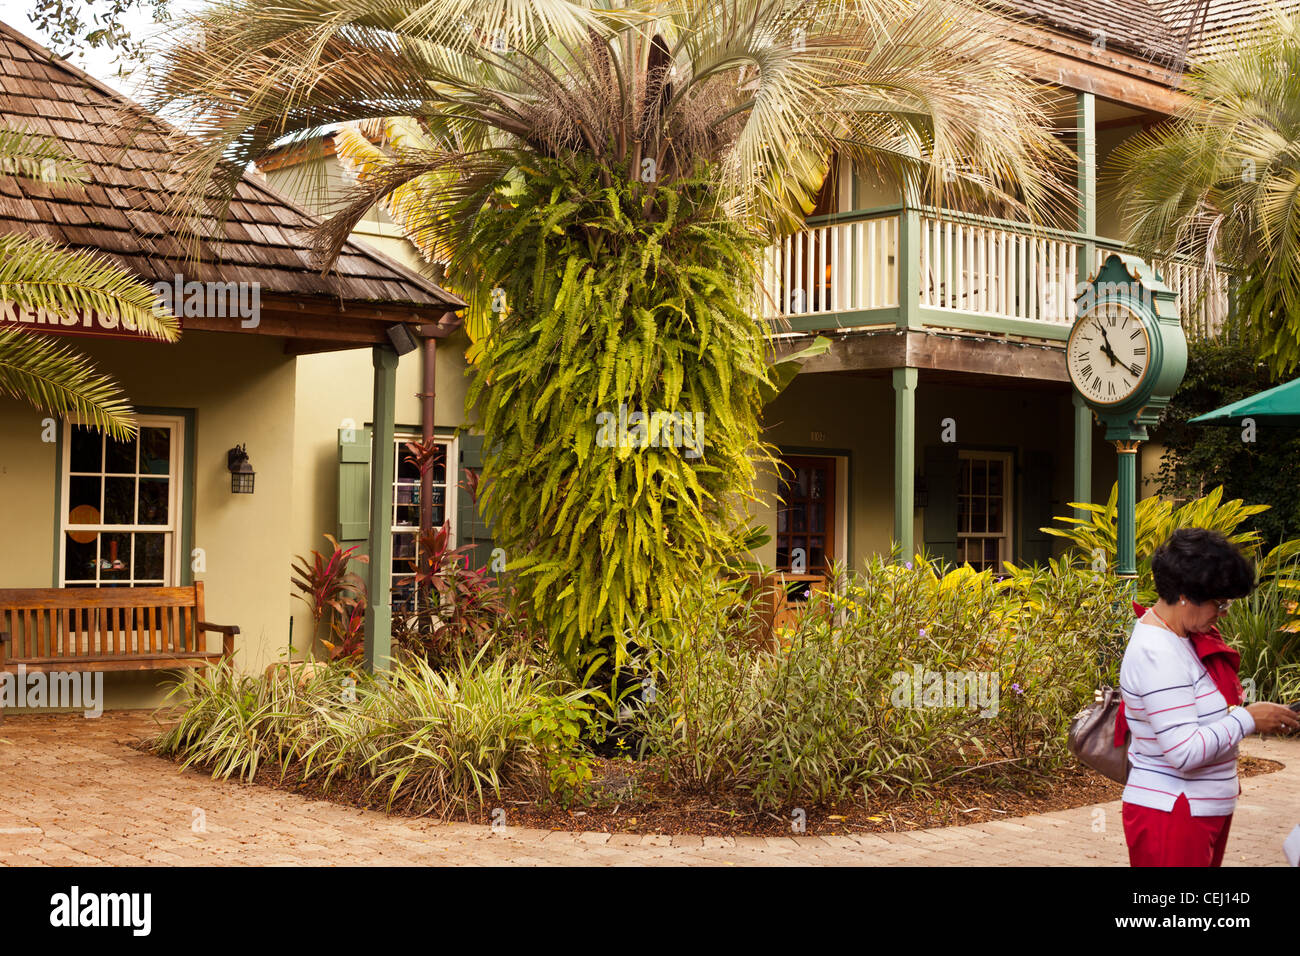 Quint kleinen Hof in St. Augustine Florida Usa, Geschäfte und café's in Hof, Brunnen im Hof Stockfoto